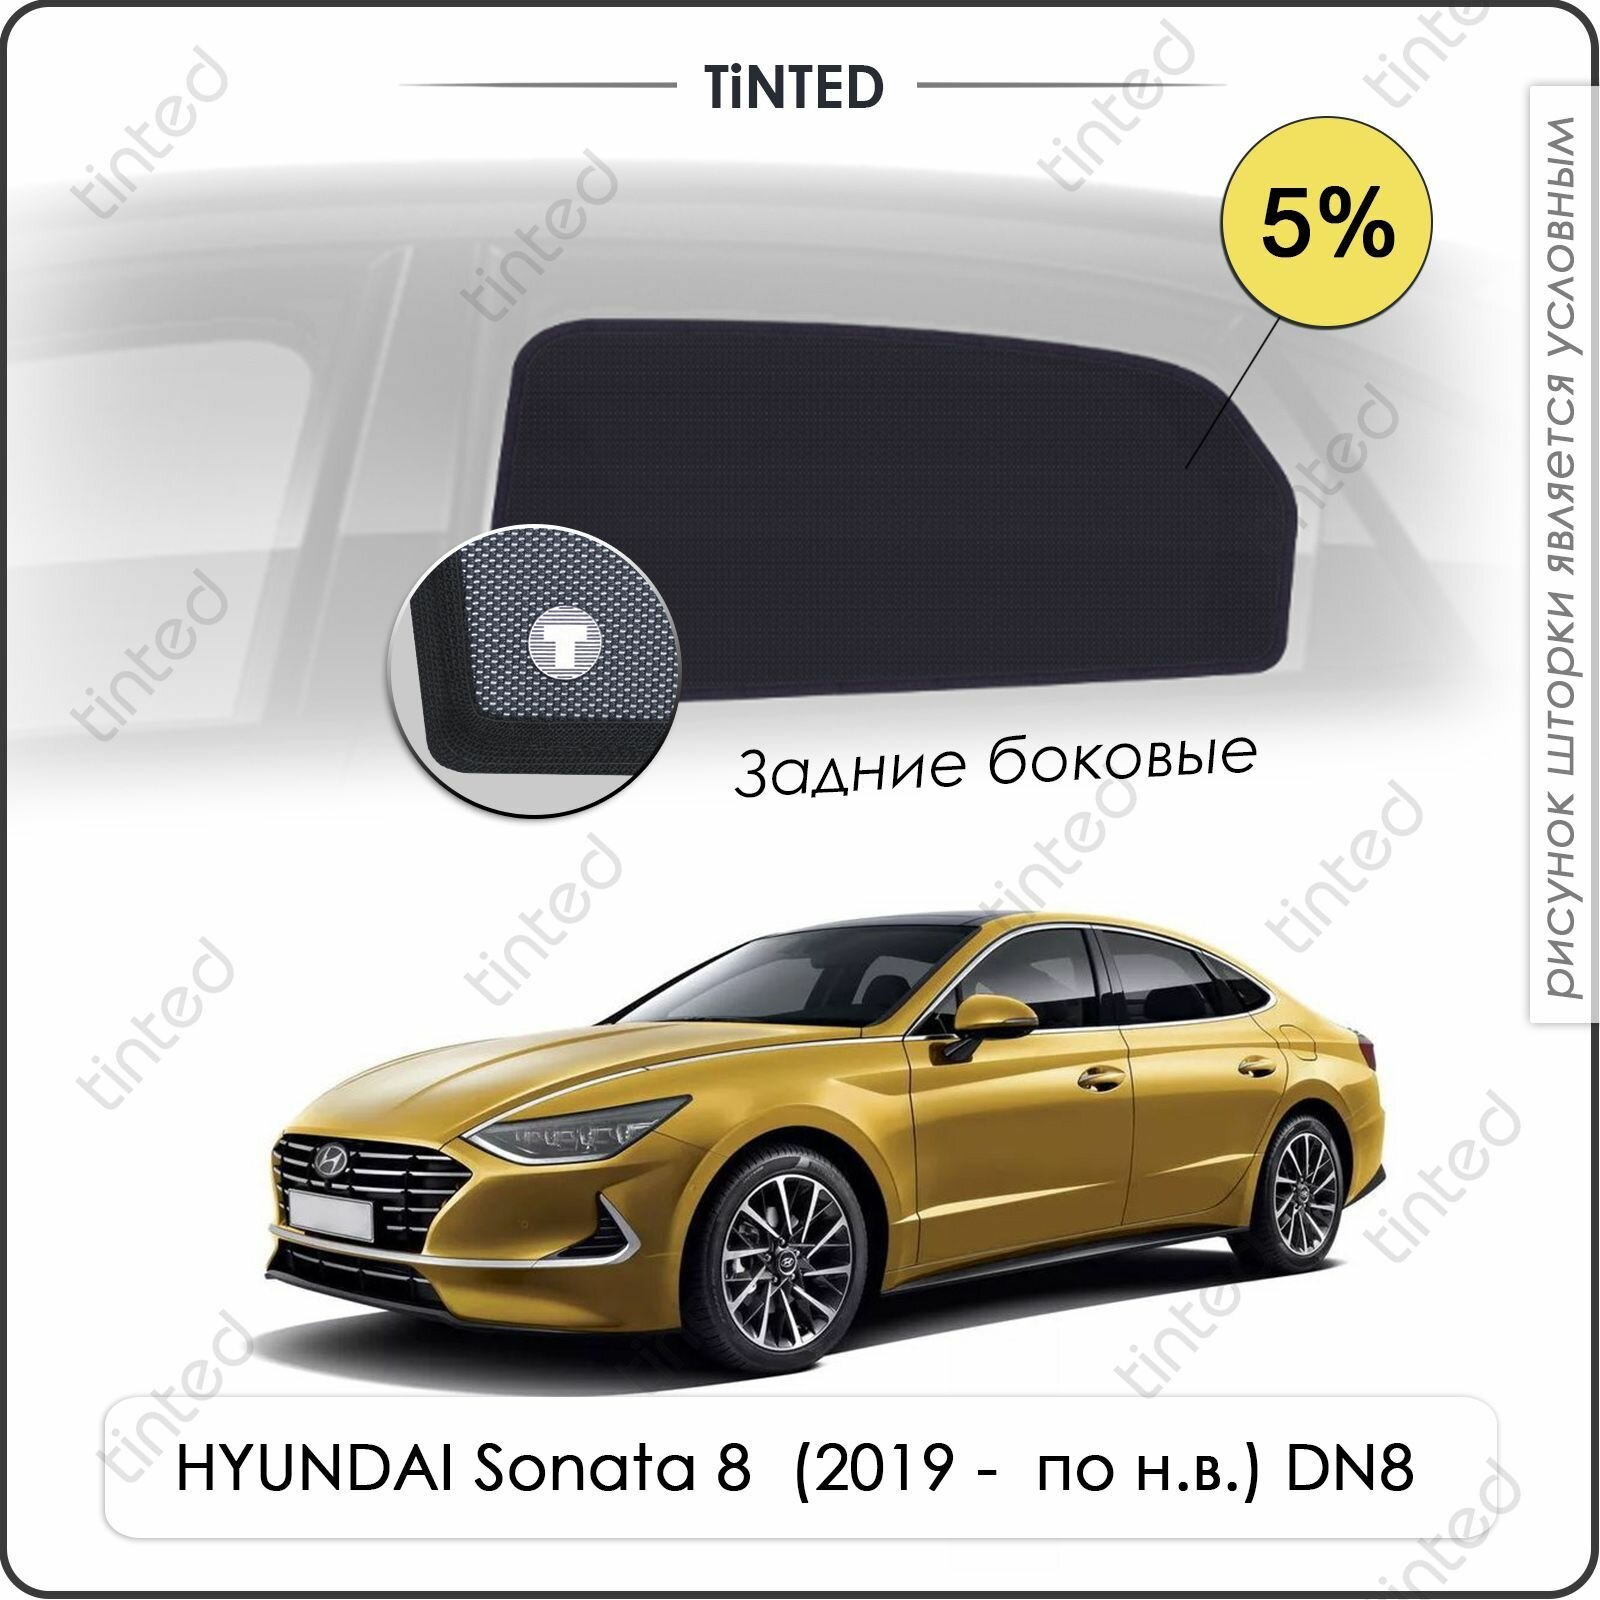 Шторки на автомобиль солнцезащитные HYUNDAI Sonata 8 Седан 4дв. (2019 - по н. в.) DN8 на задние двери 5% сетки от солнца в машину хёндай соната Каркасные автошторки Premium